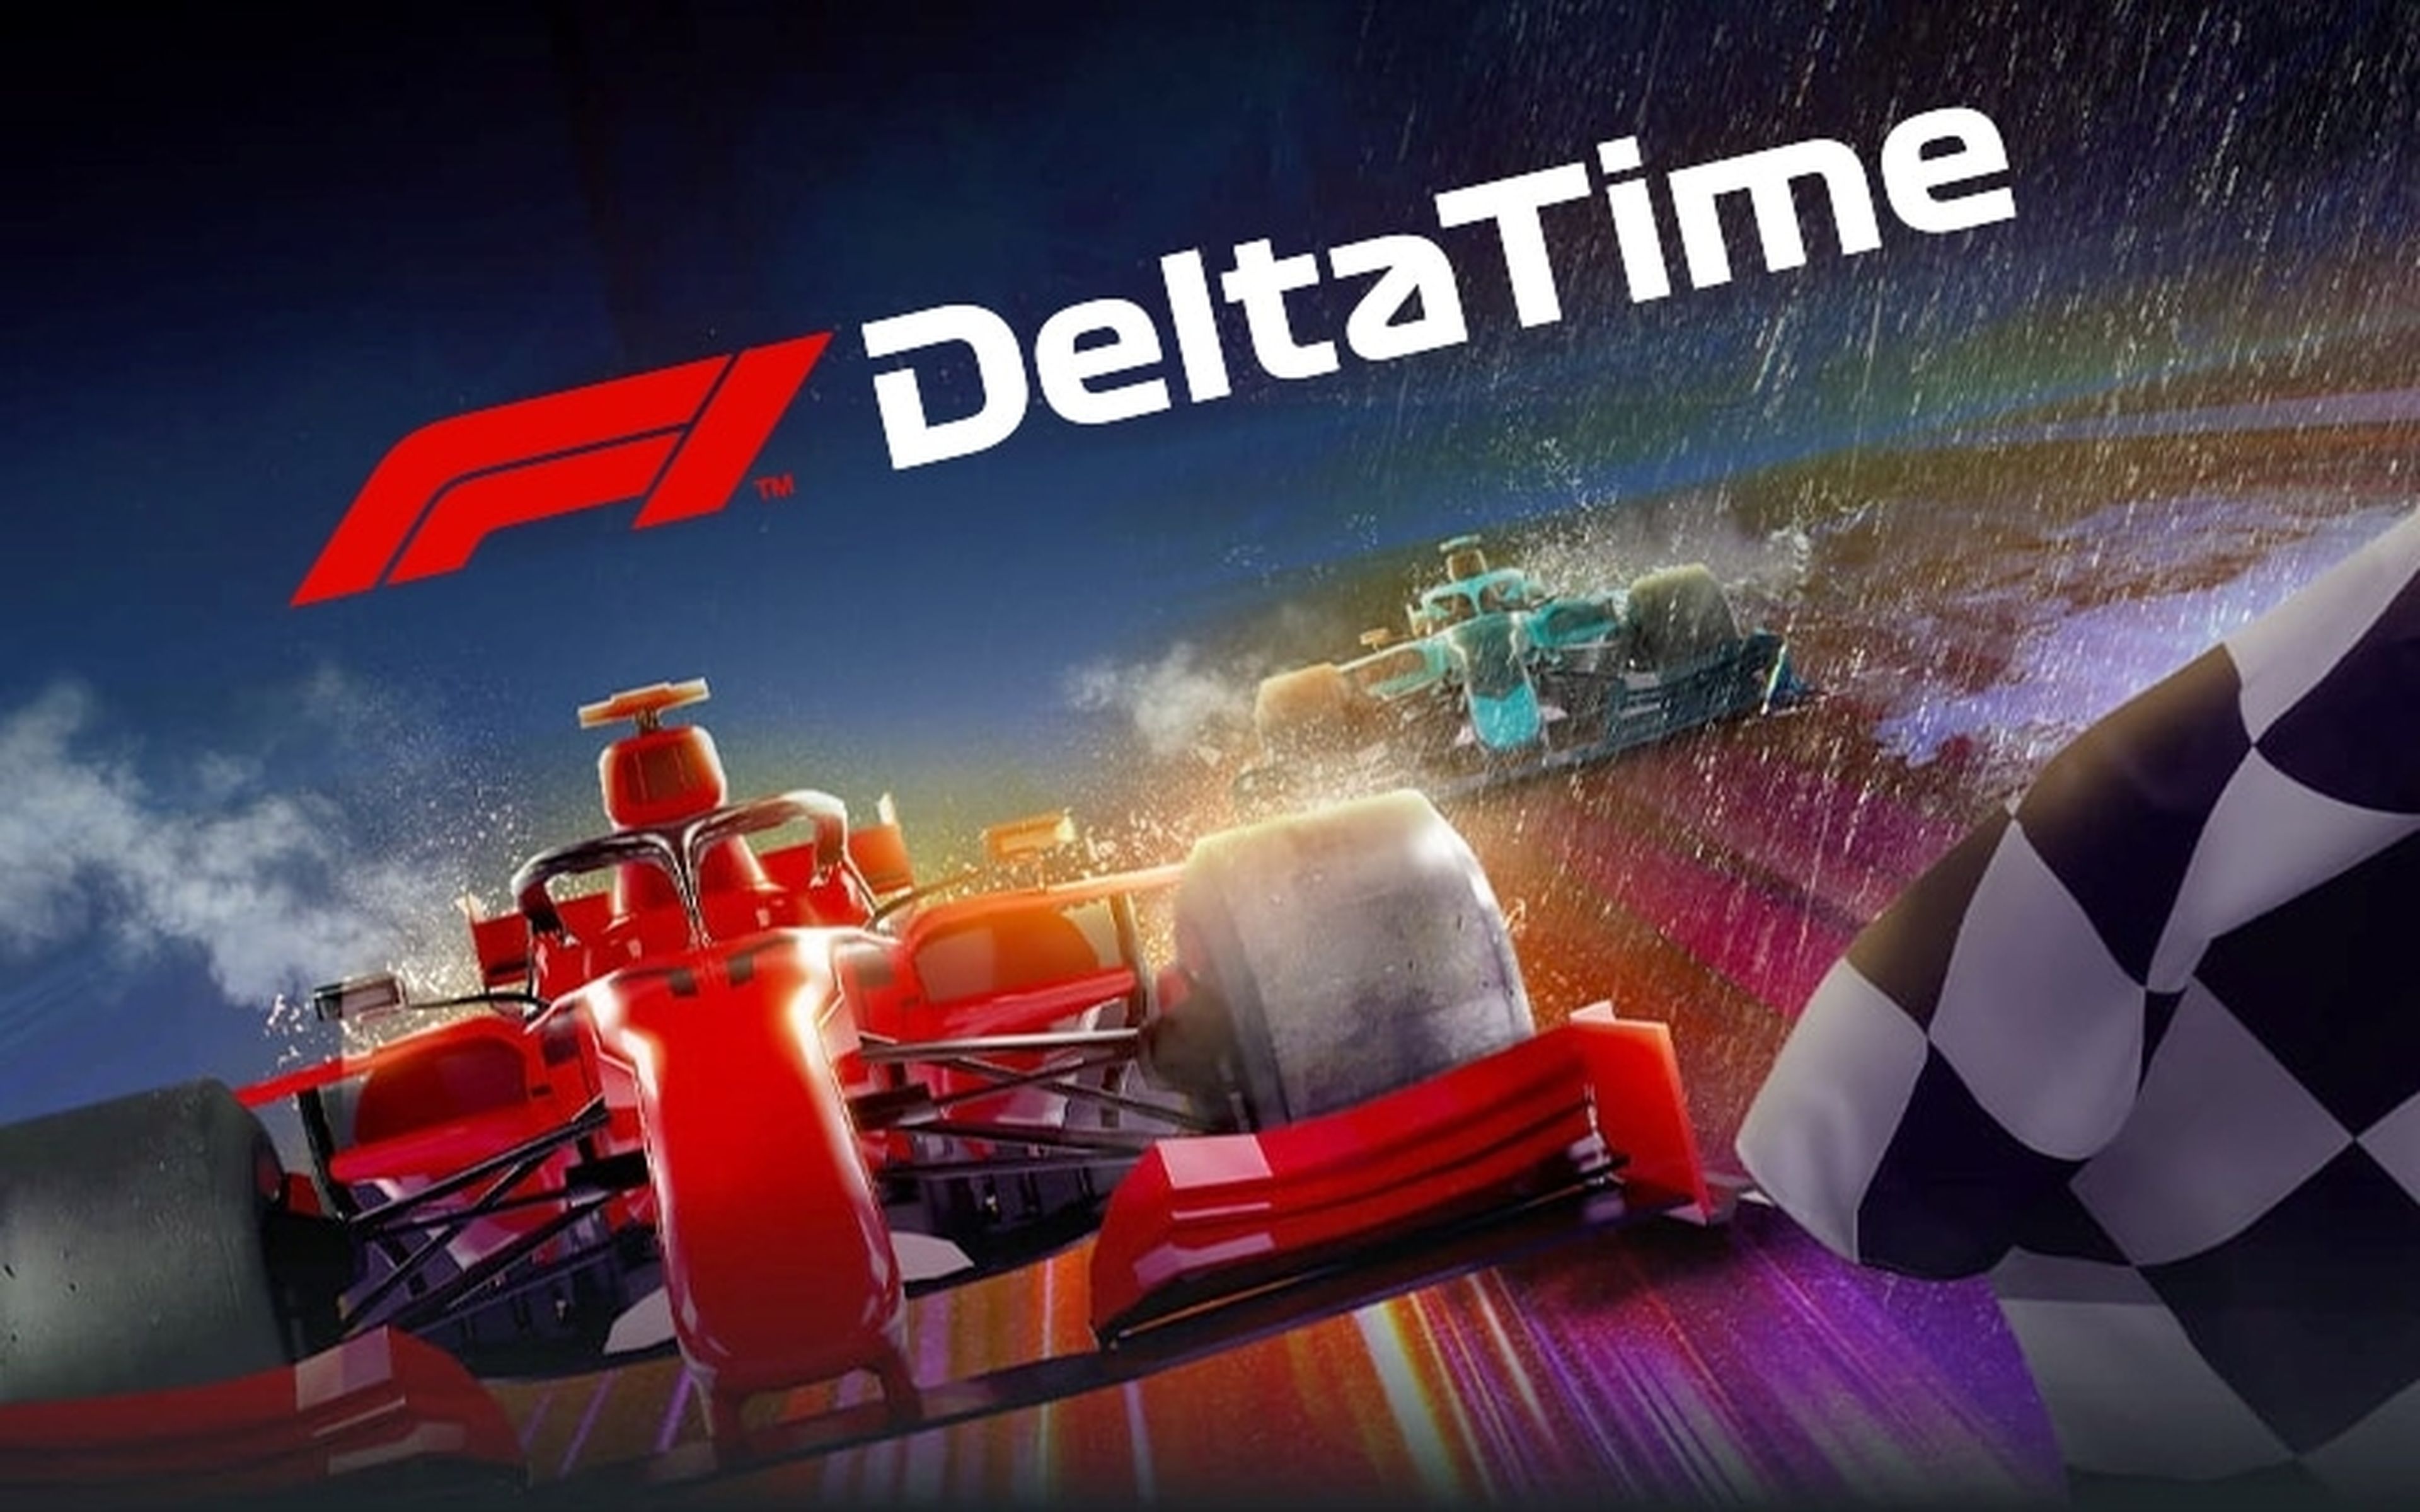 Los peligros de los NFT: cierra el juego F1 Delta Time y los NFT de Ubisoft, pagaron 300.000 euros por tokens que hoy no valen nada